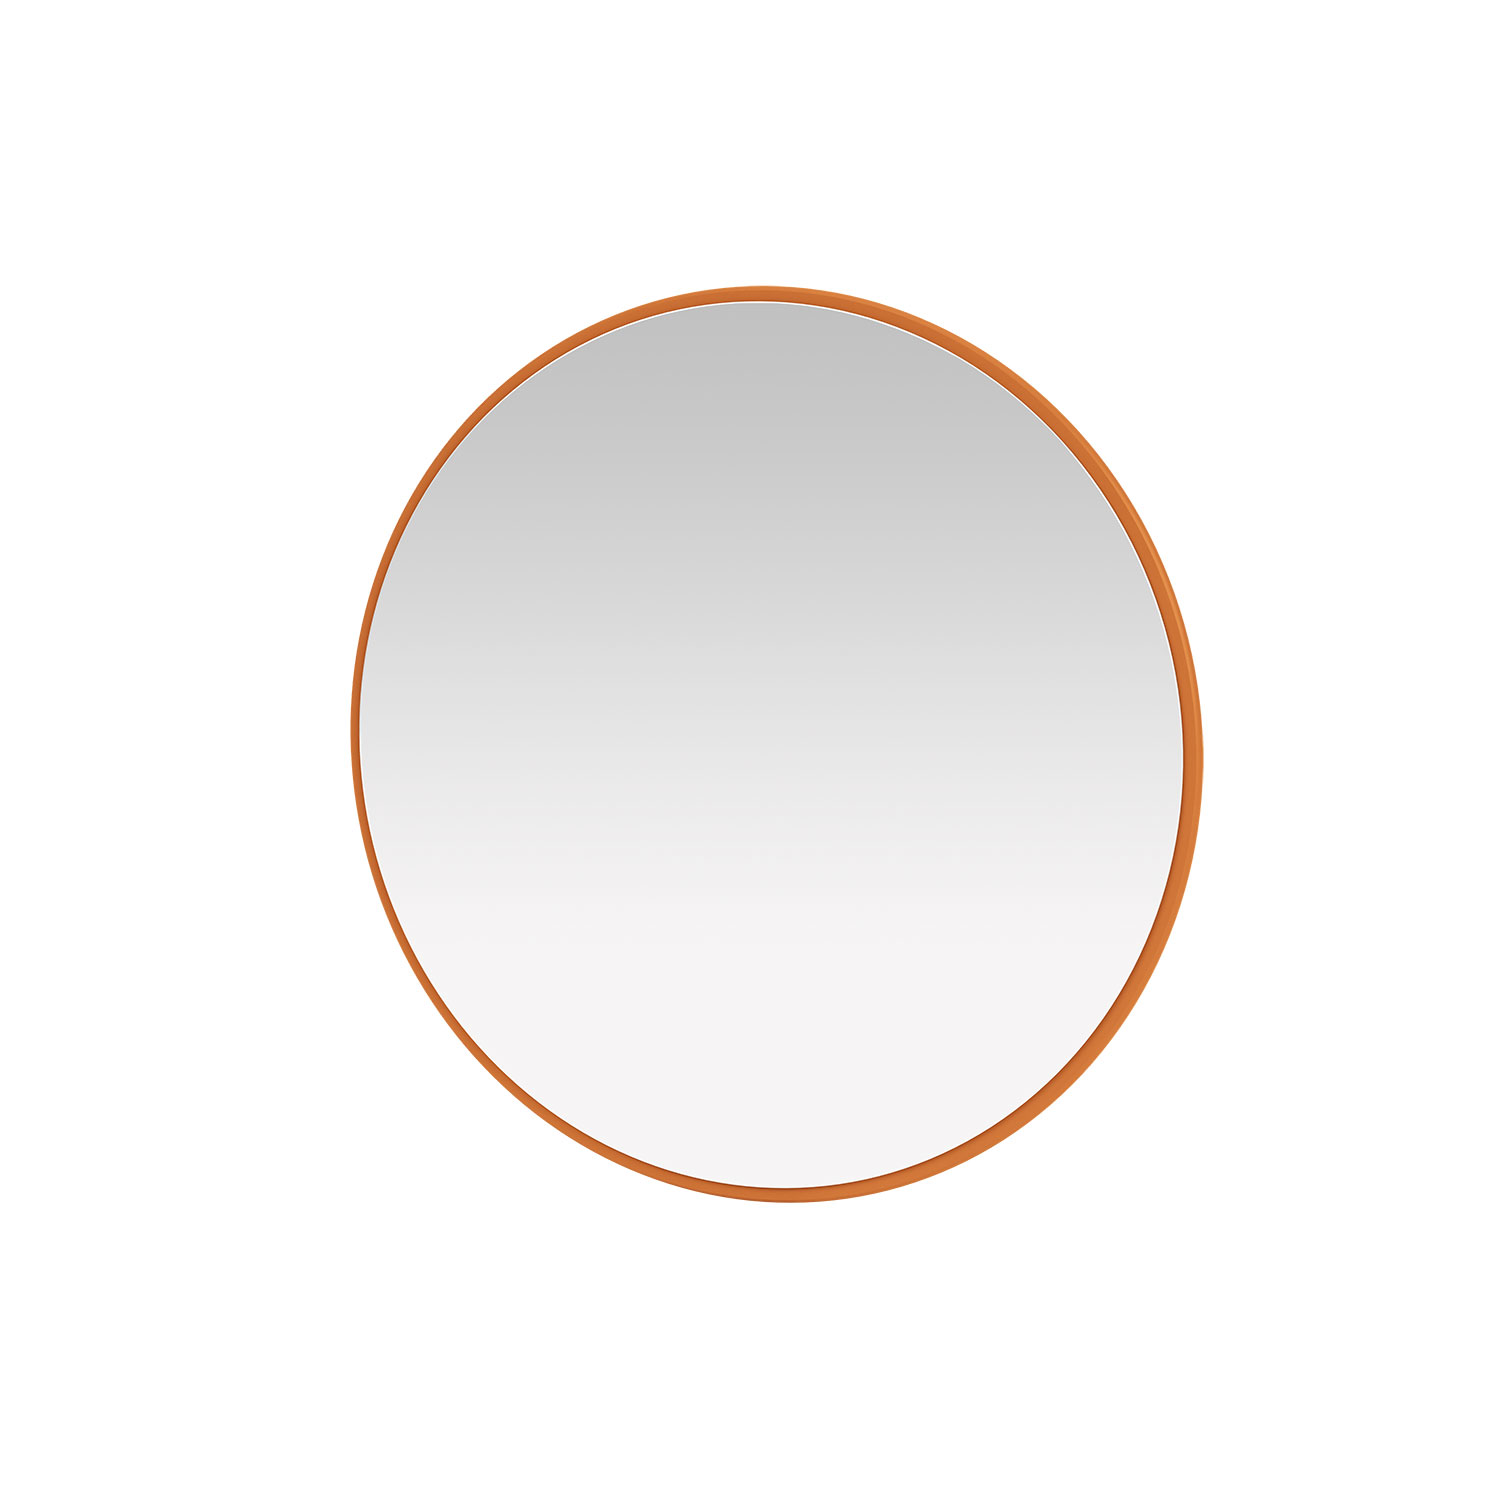 AROUND mirror, Turmeric